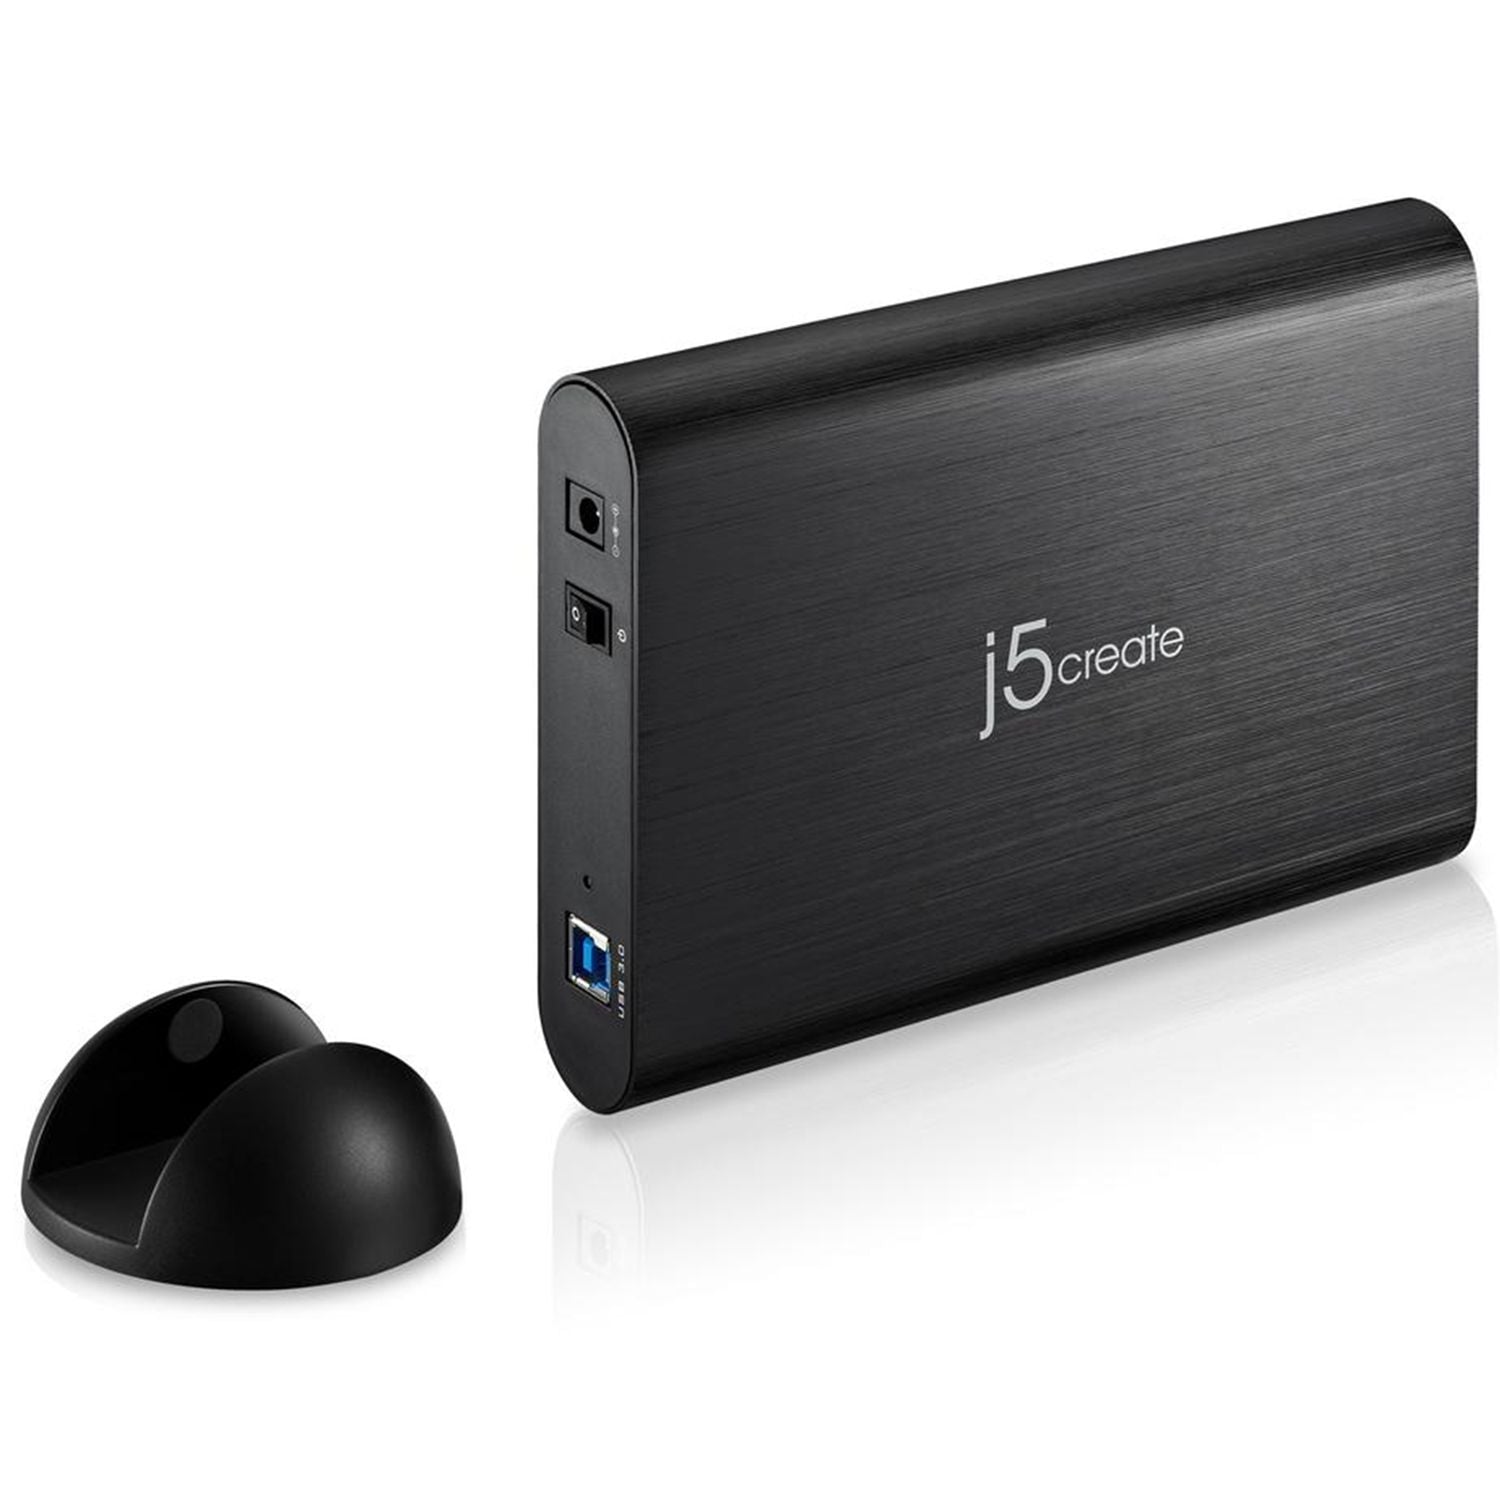 fætter hvorfor Joke JEE351 3.5 in SATA to USB 3.0 External Hard Drive Enclosure – j5create